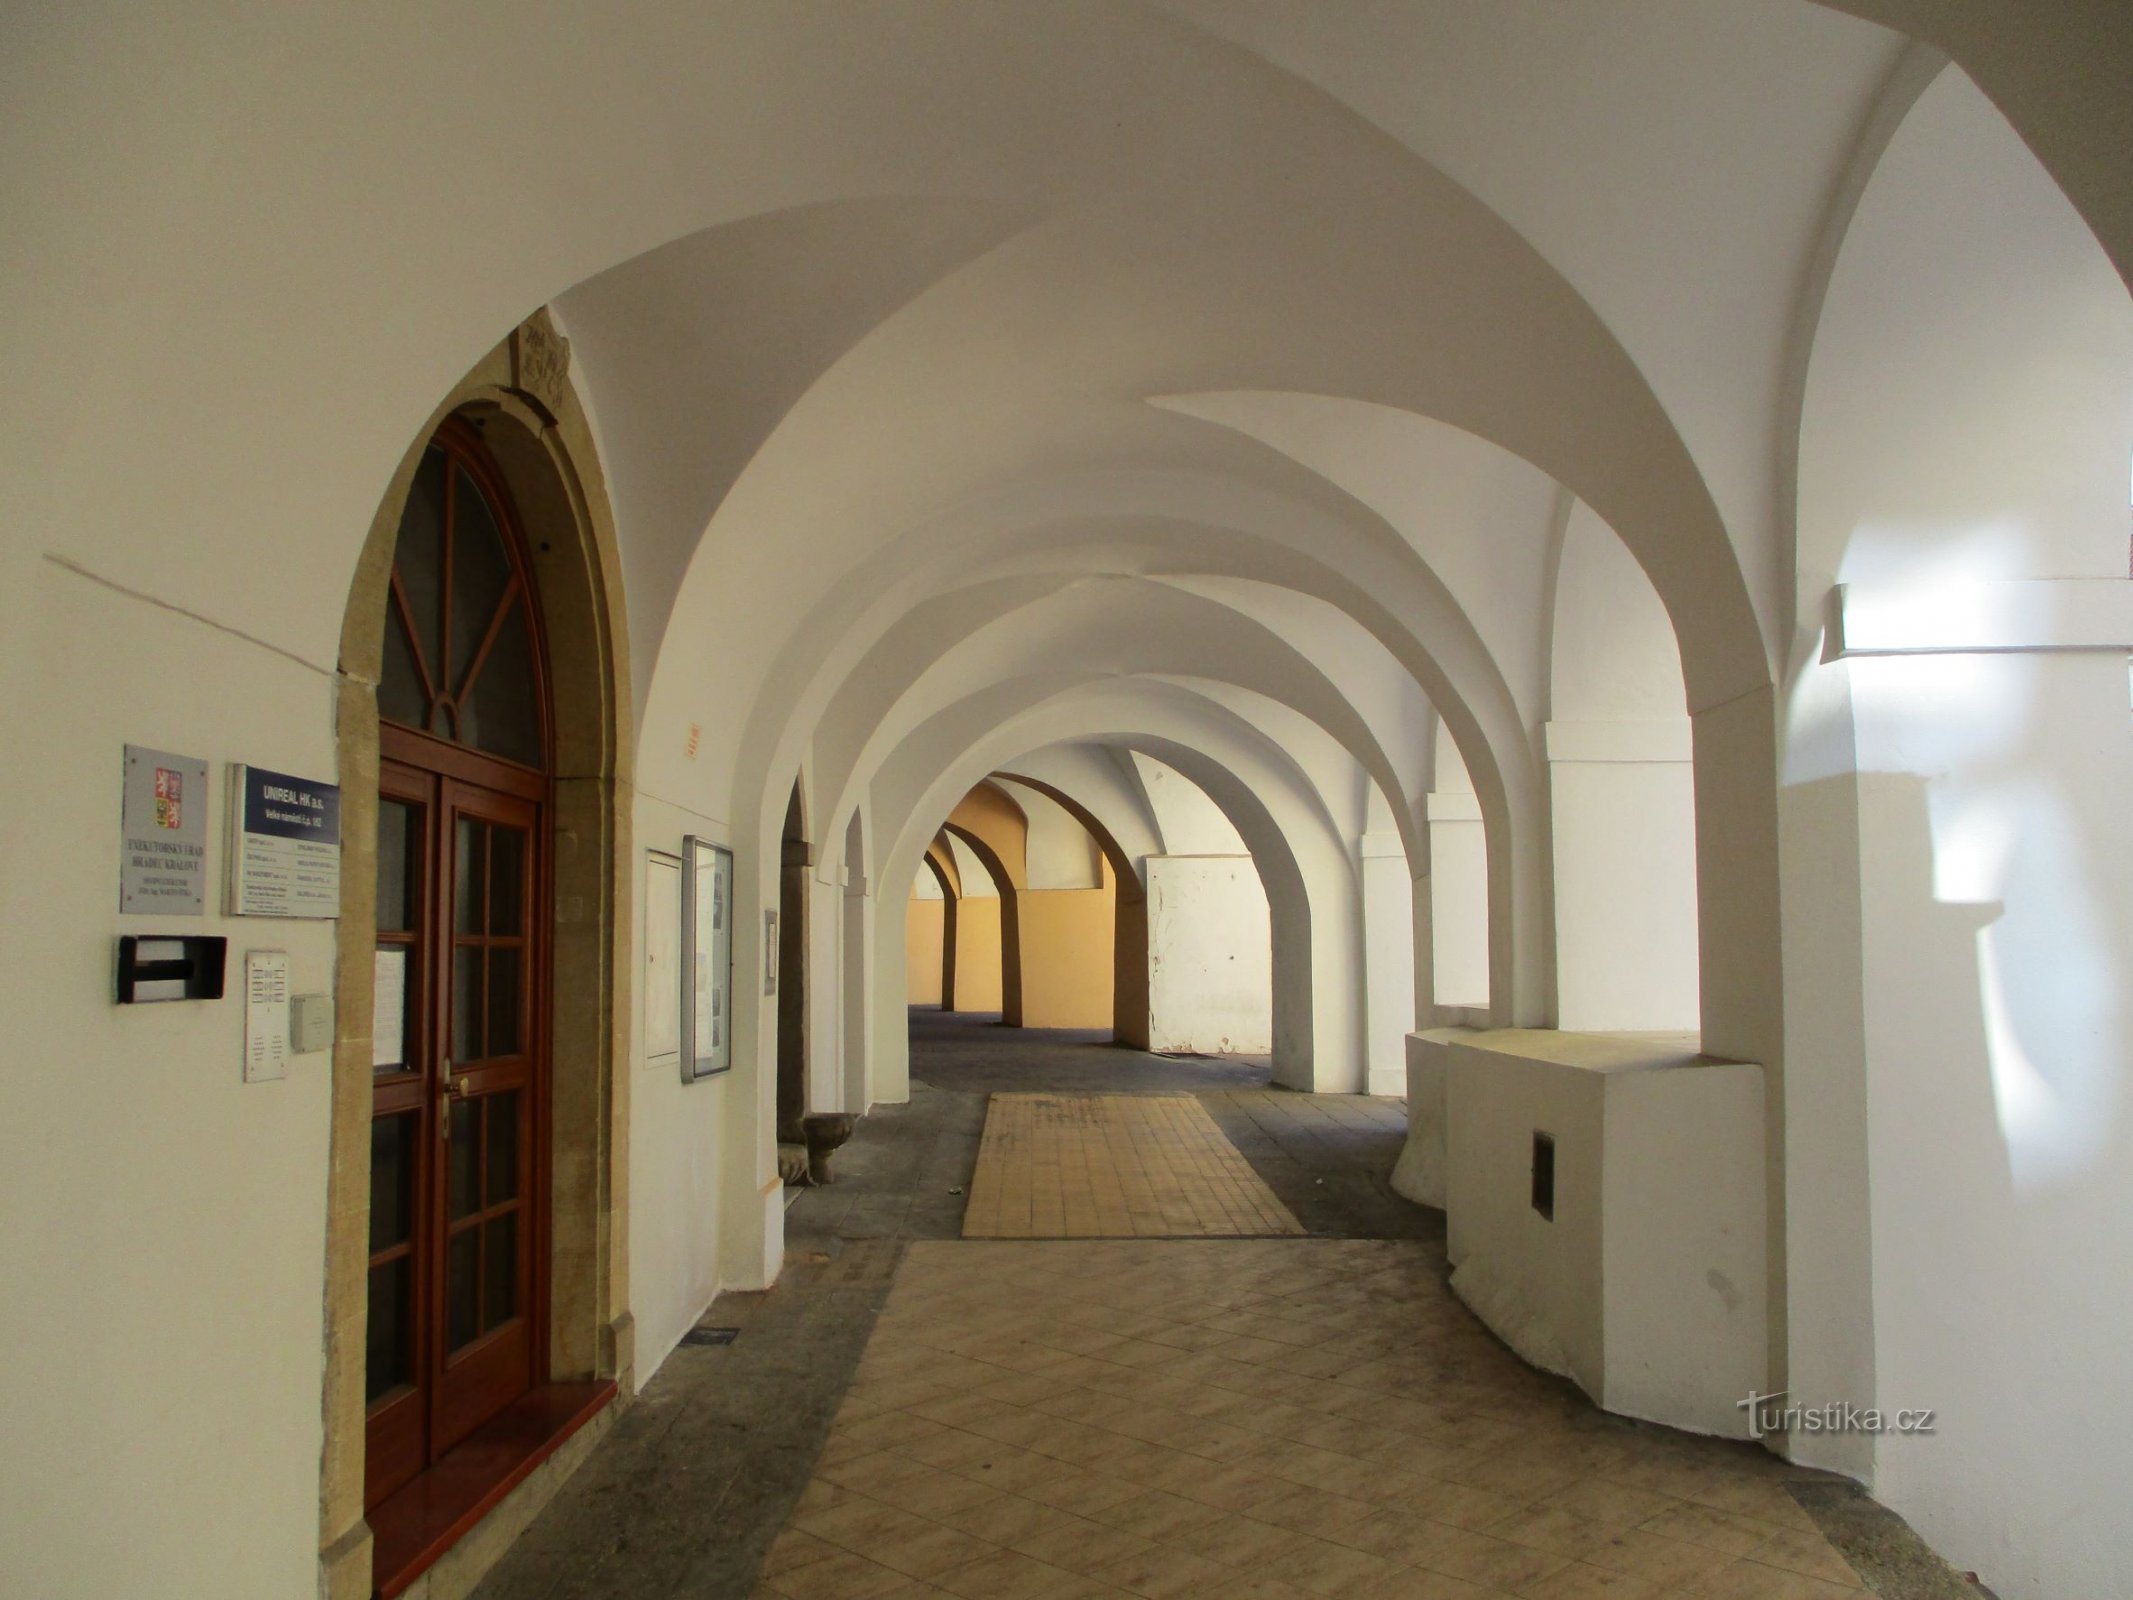 Velika dvorana s br. 162 (Hradec Králové, 25.4.2020.)